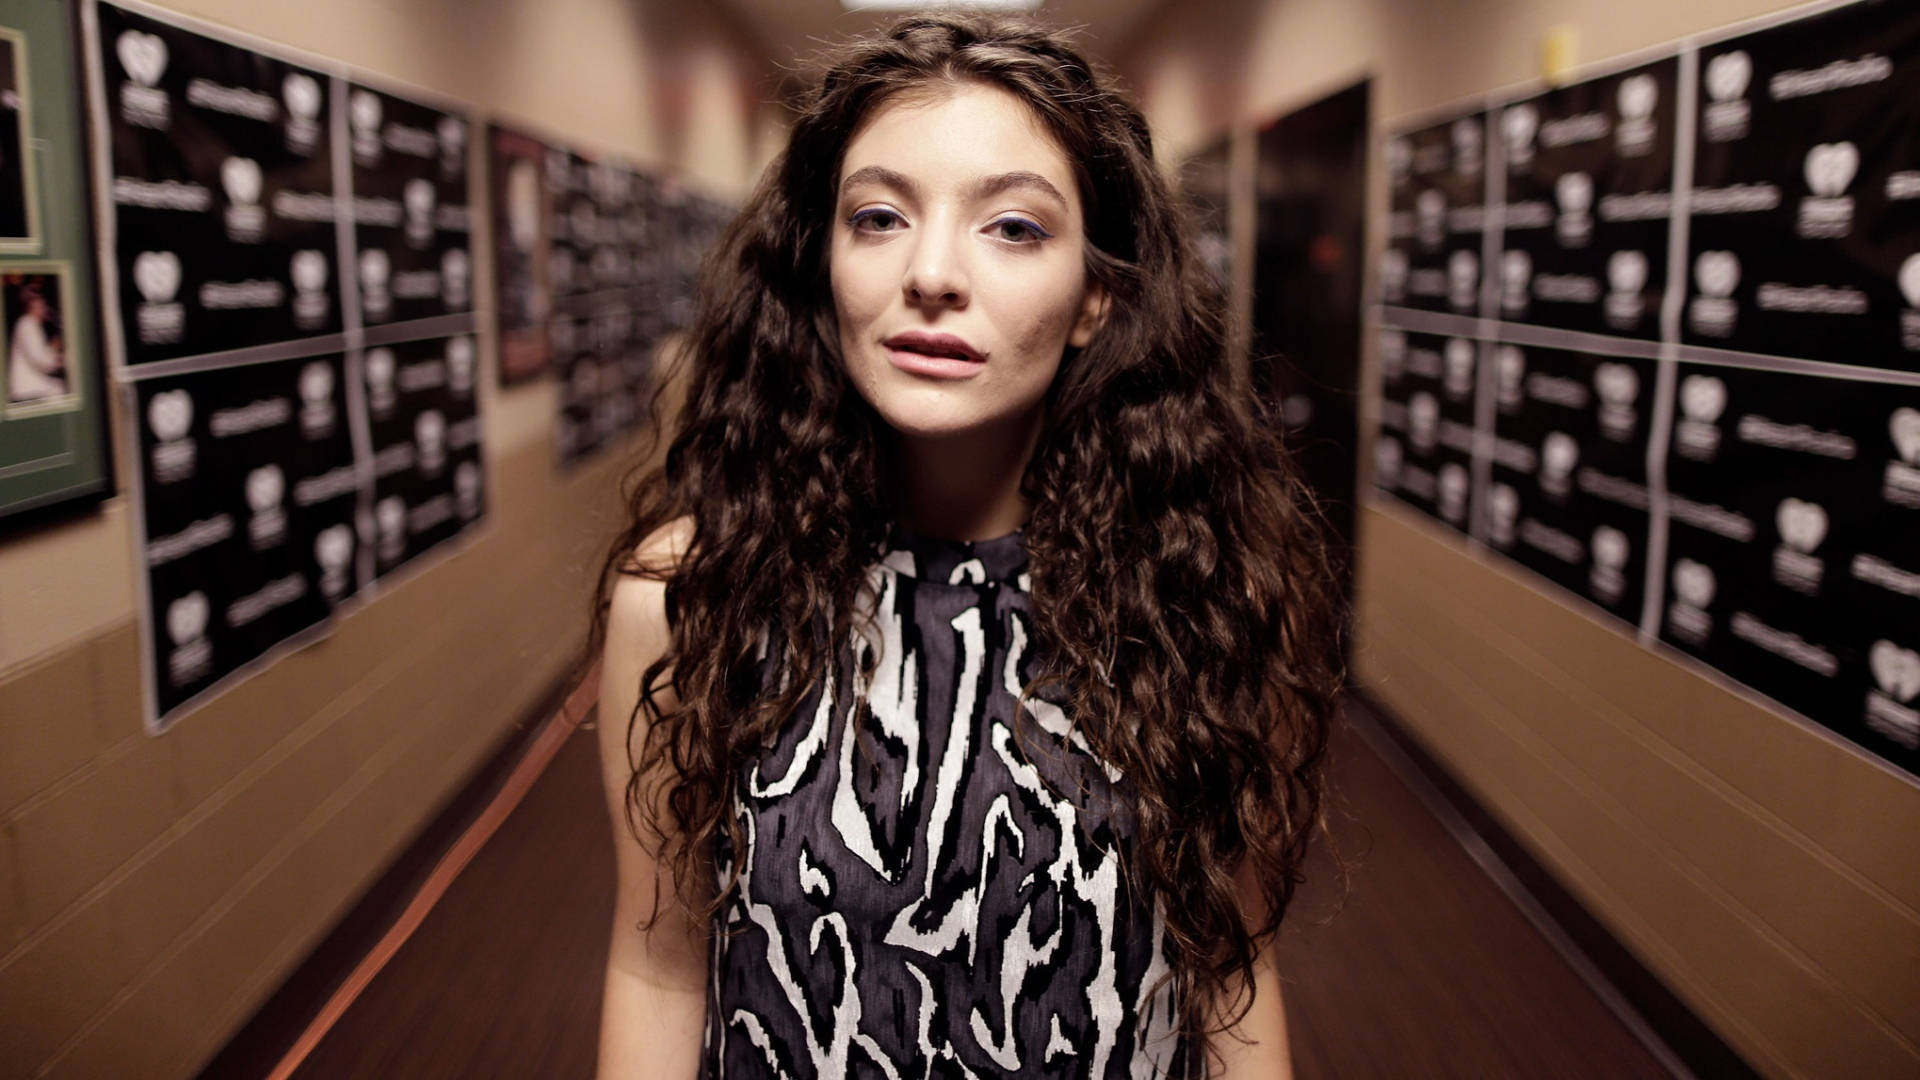 Singer Lorde In Hallway